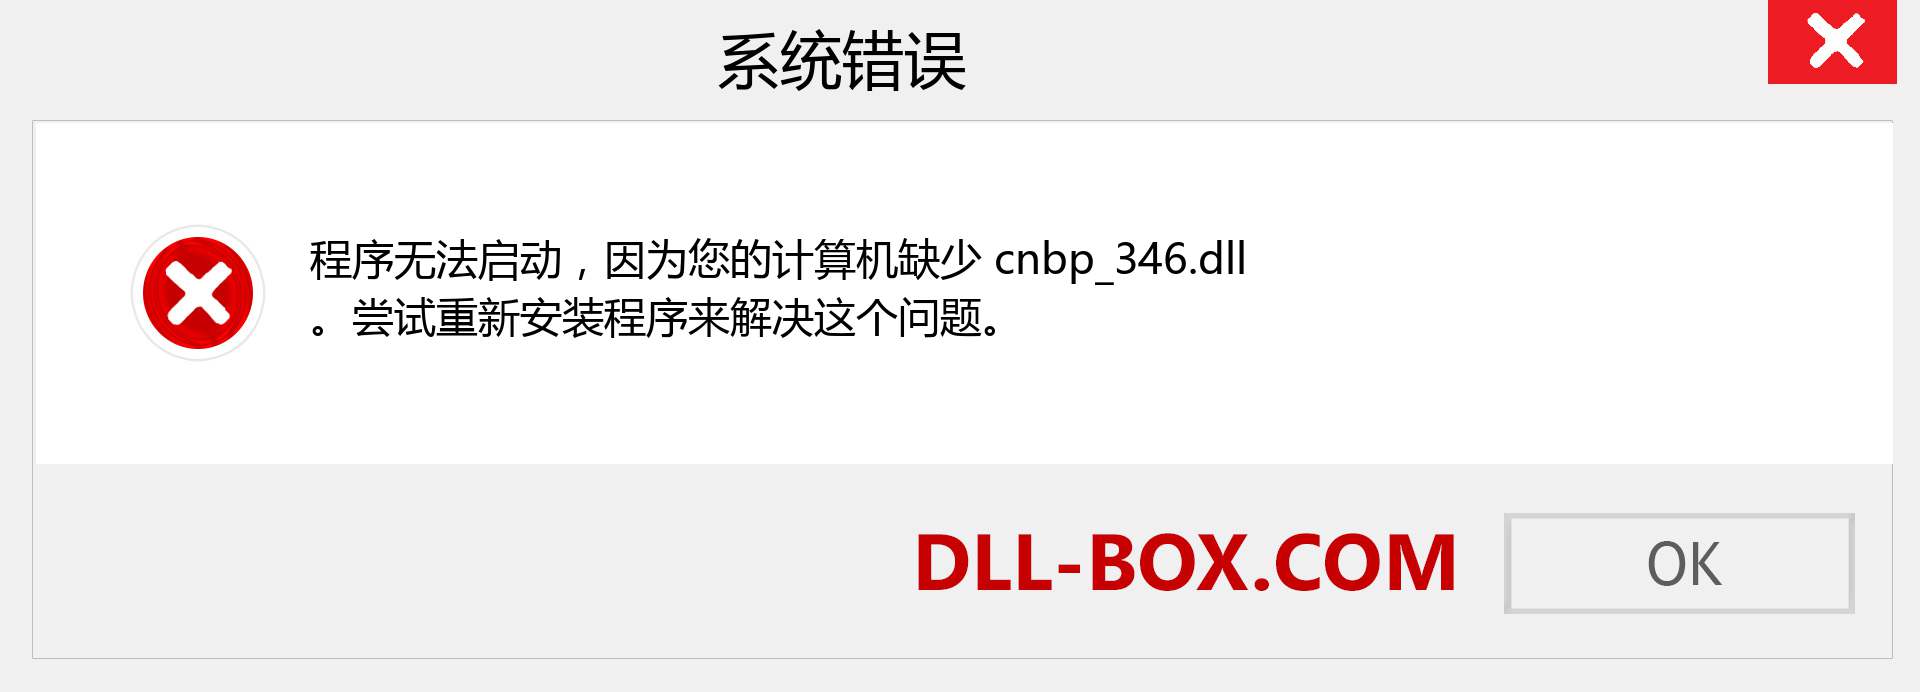 cnbp_346.dll 文件丢失？。 适用于 Windows 7、8、10 的下载 - 修复 Windows、照片、图像上的 cnbp_346 dll 丢失错误